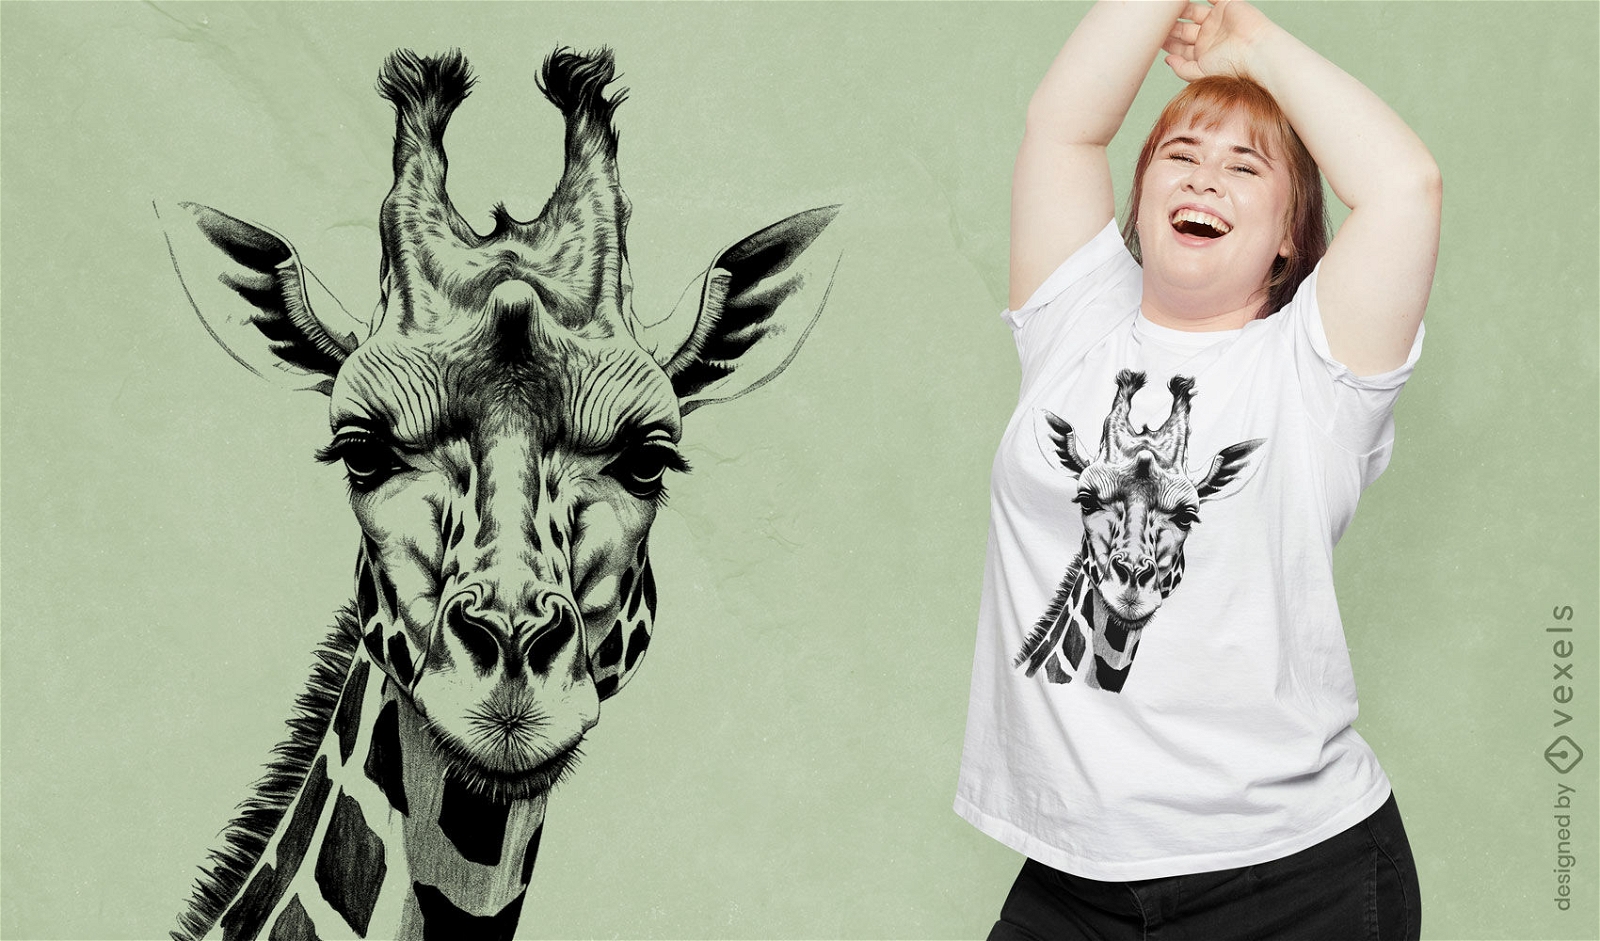 Dise?o detallado de camiseta con ilustraci?n de jirafa.